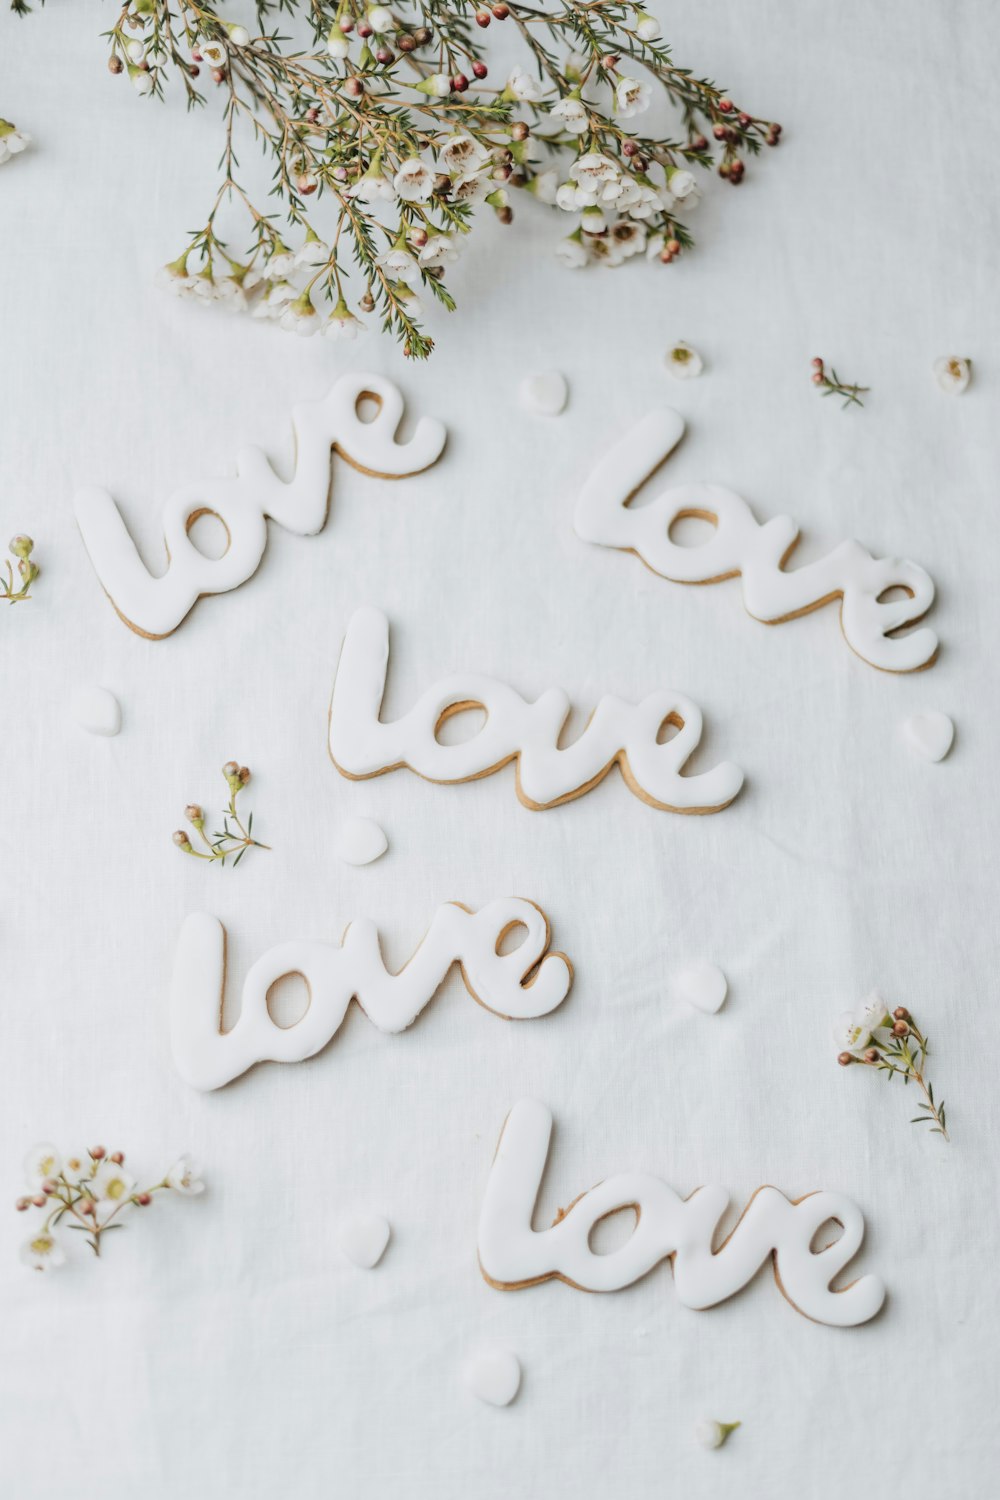 Die Worte Liebe und Liebe auf einem Blatt Papier